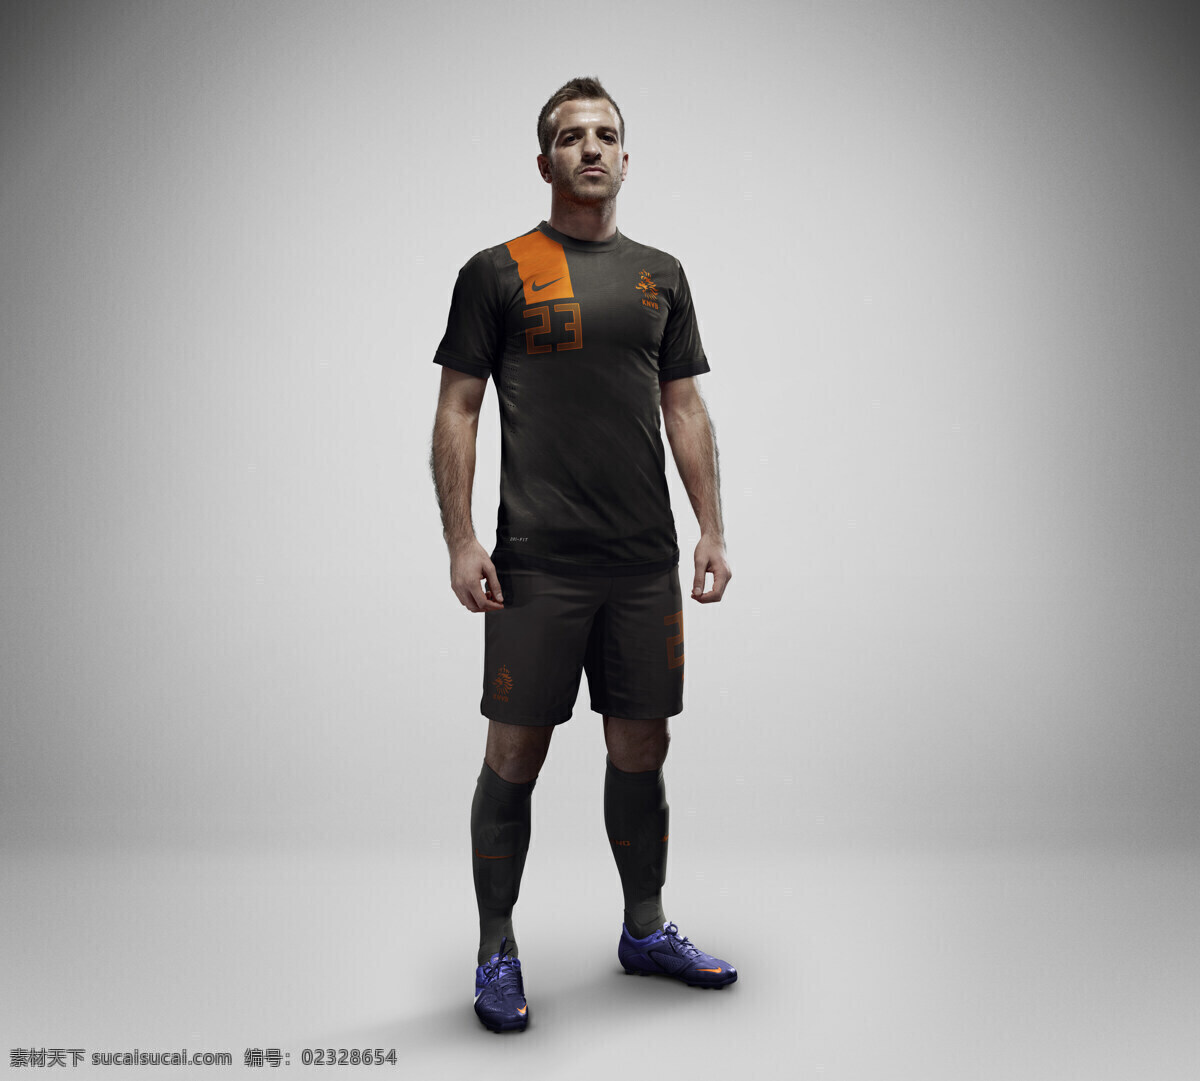 nike 广告宣传 平面广告 体育运动 文化艺术 足球 系列 平面 荷兰国家队 范德法特 矢量图 日常生活